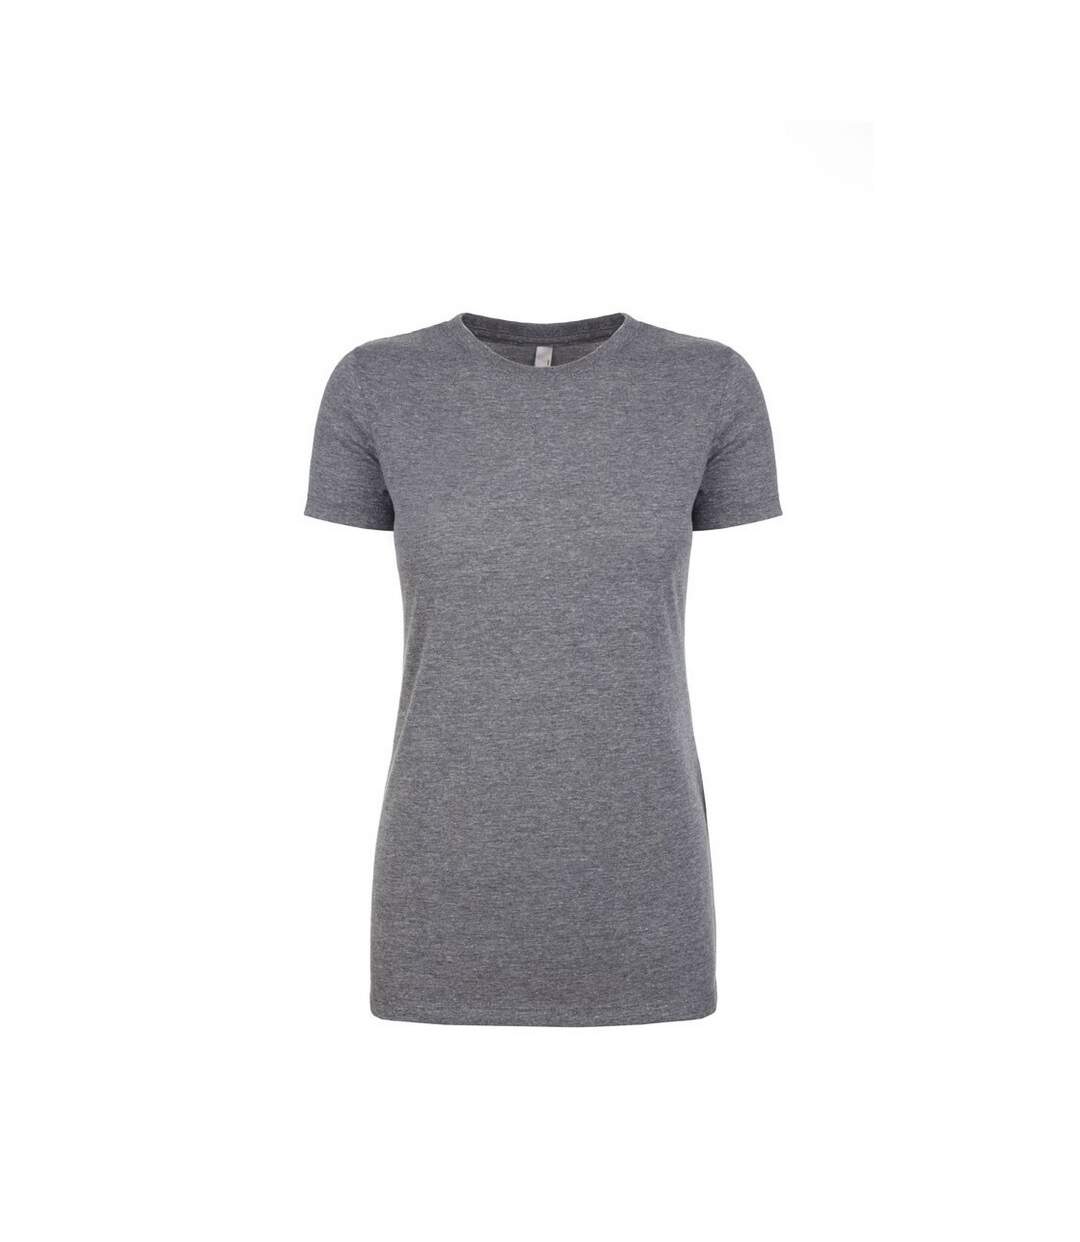 Next Level - T-shirt manches courtes - Femme (Gris chiné) - UTPC3496